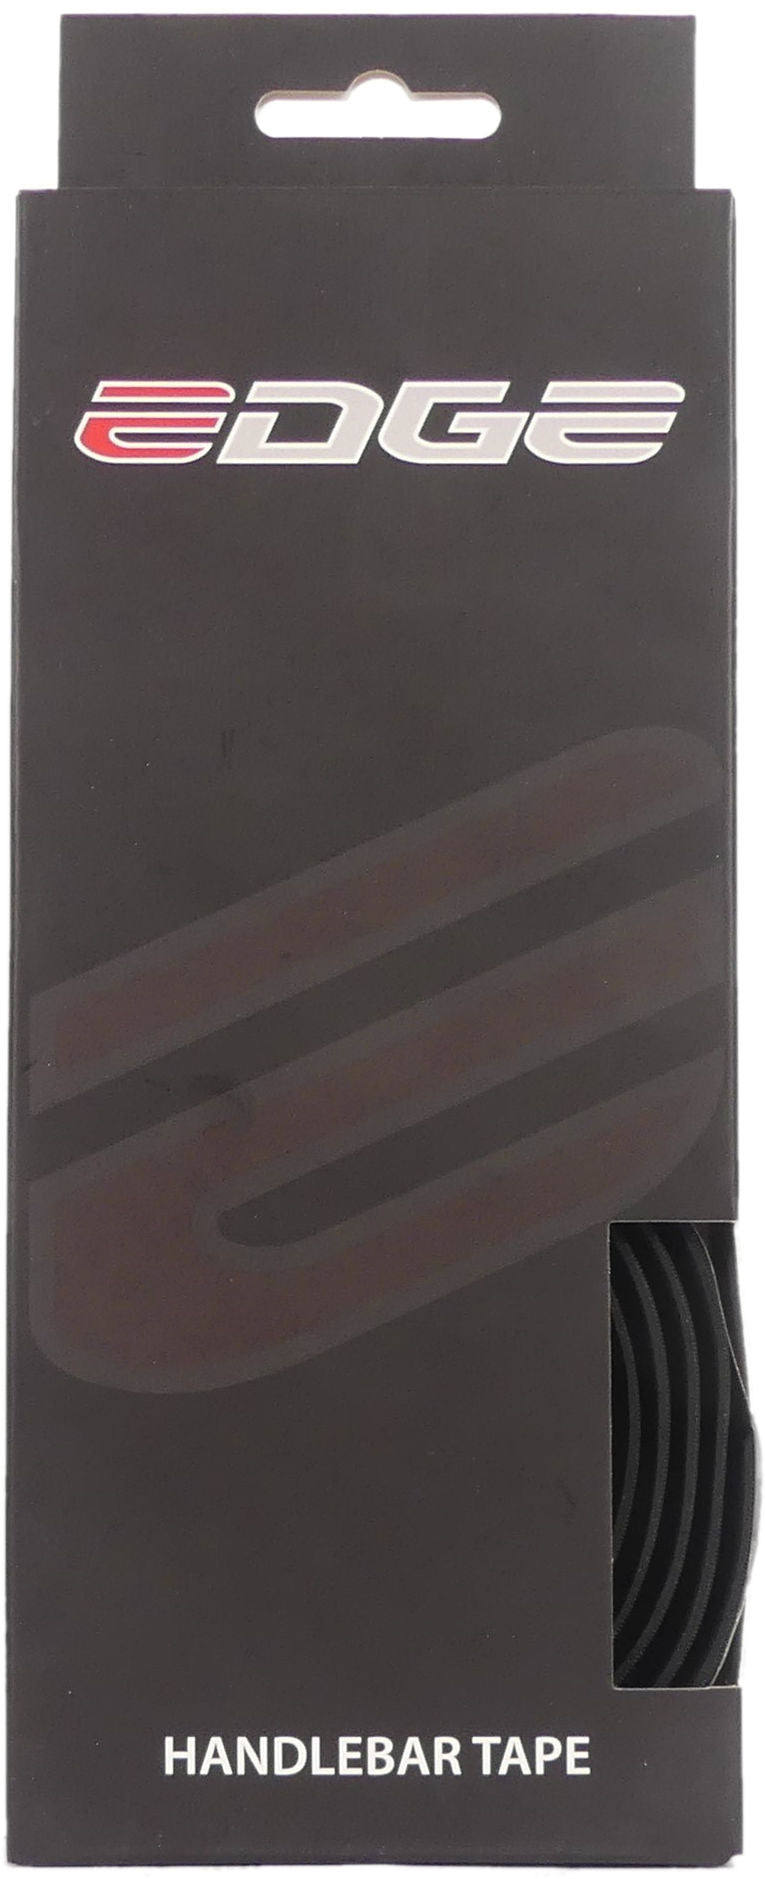 Edge Stuurlint carbon wit (2 stuks in een doos)